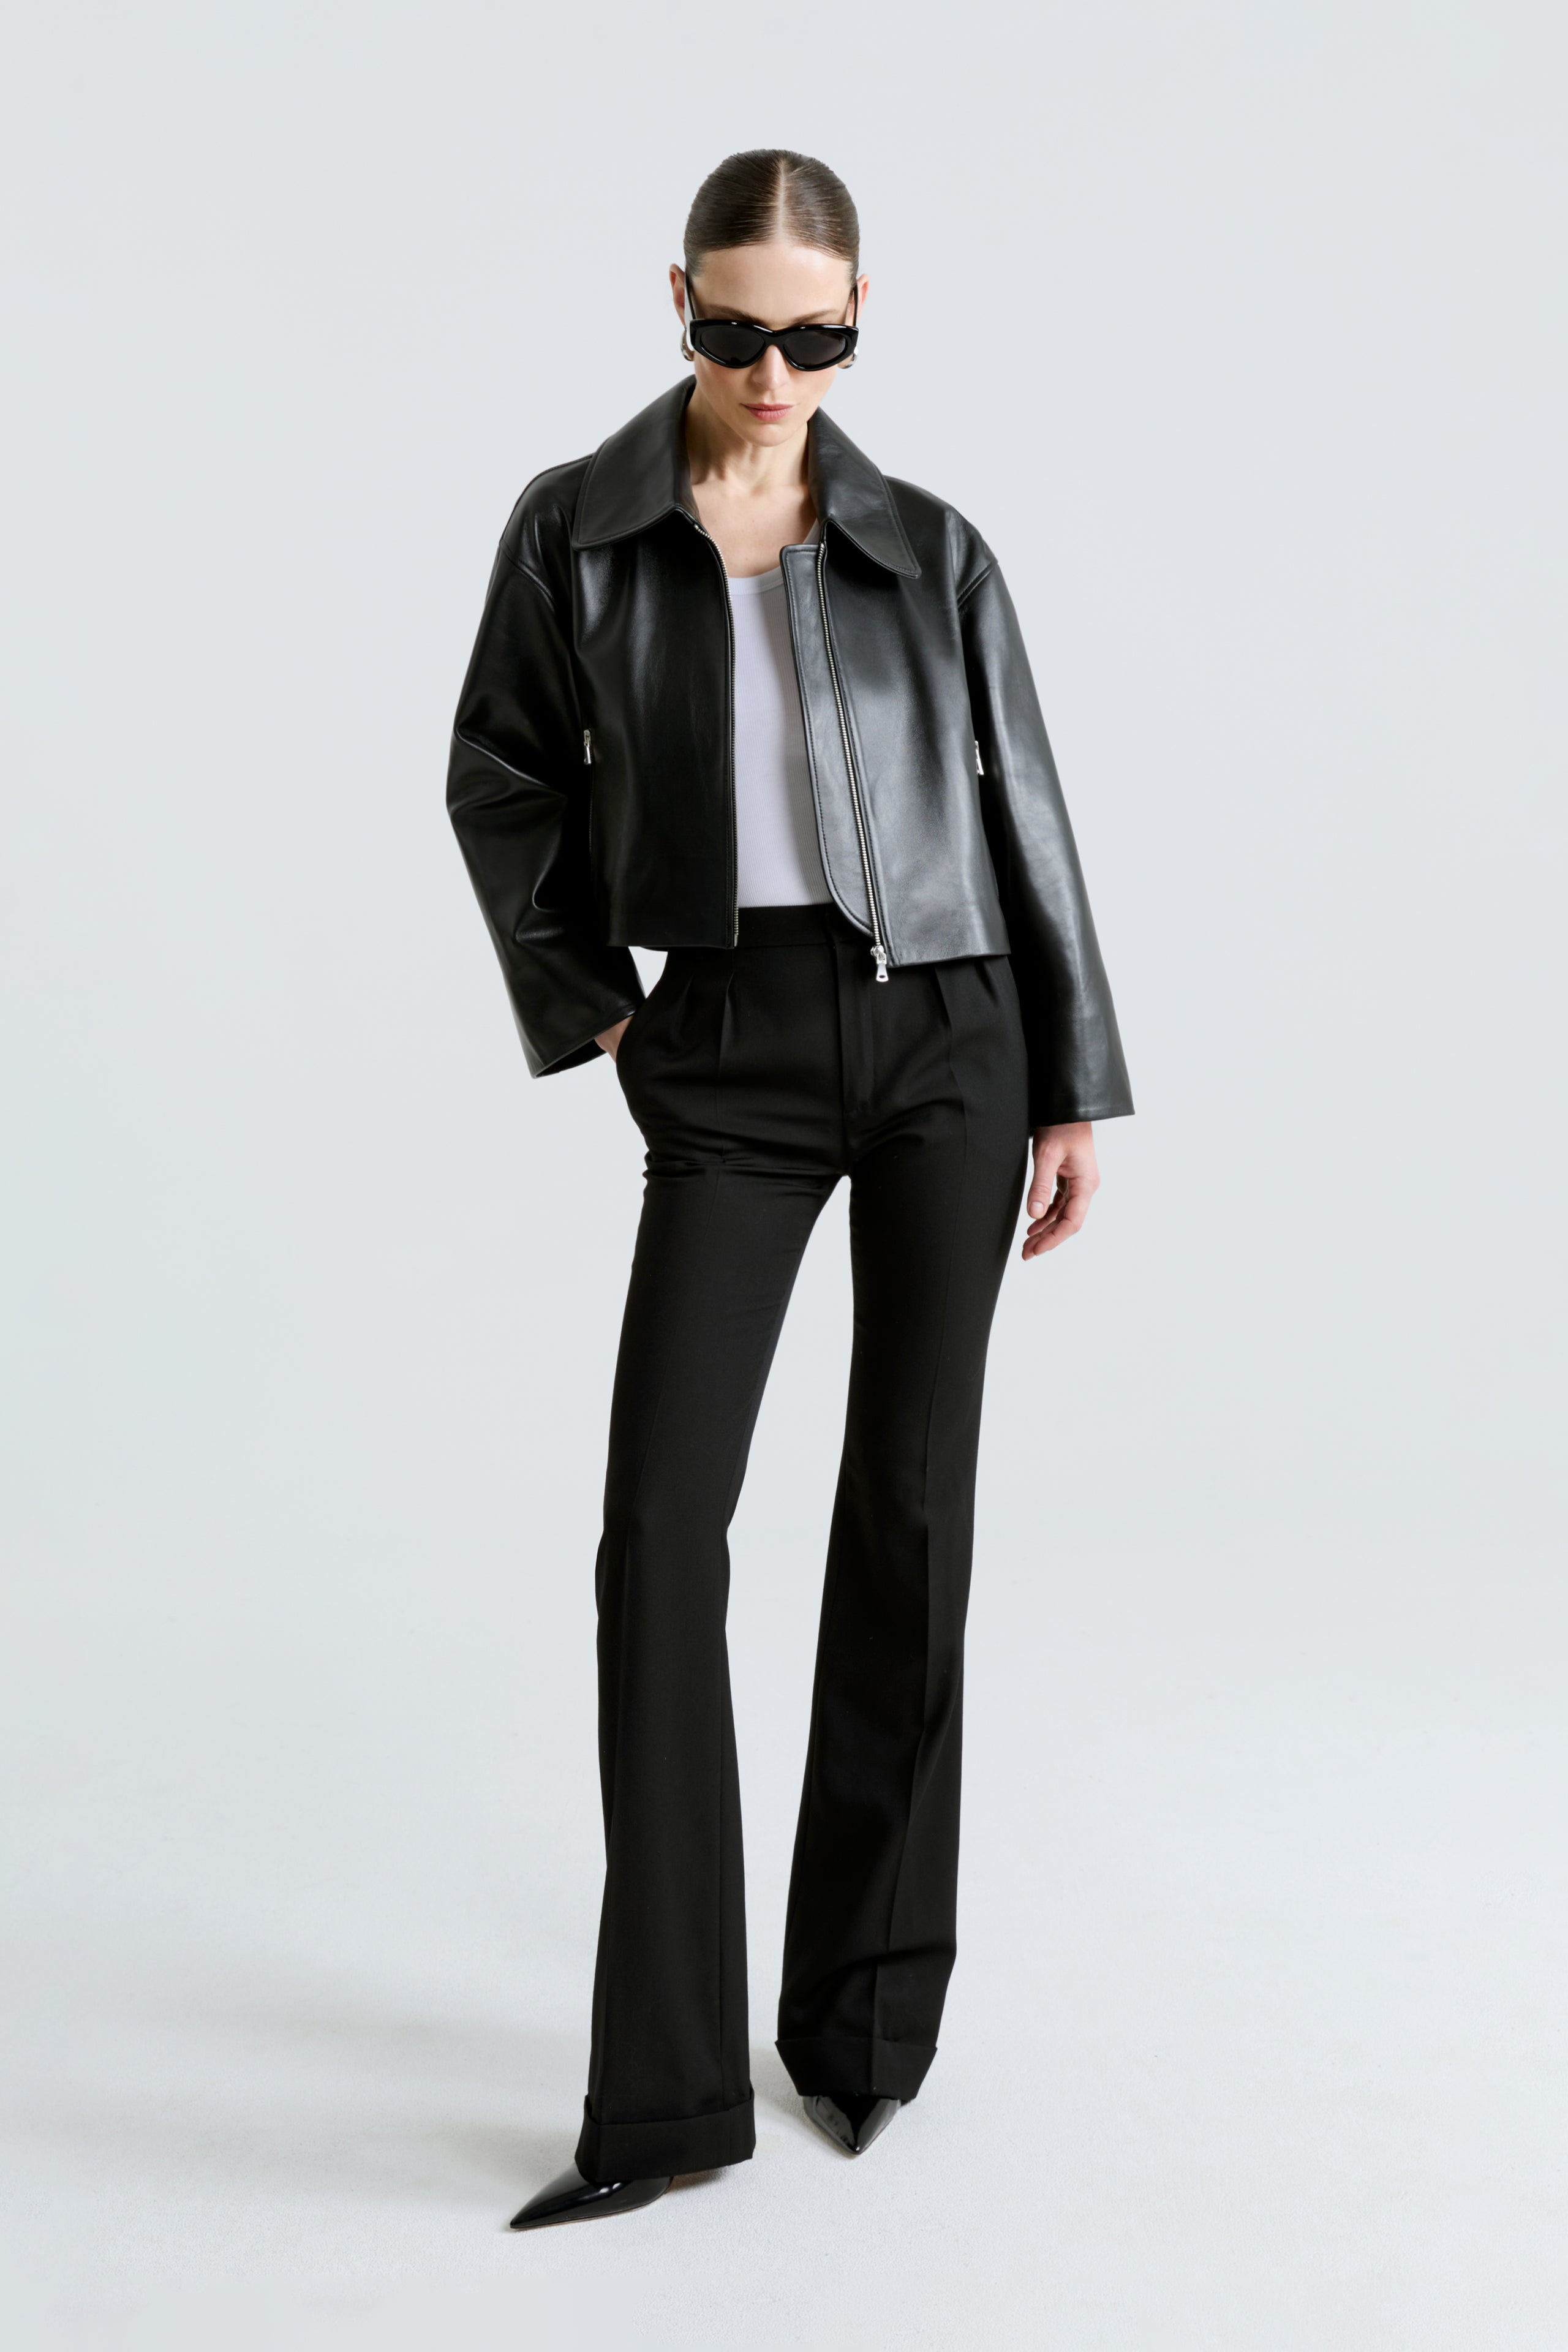 Model is wearing the Sloan Black Minimalist Leather Jacket Front